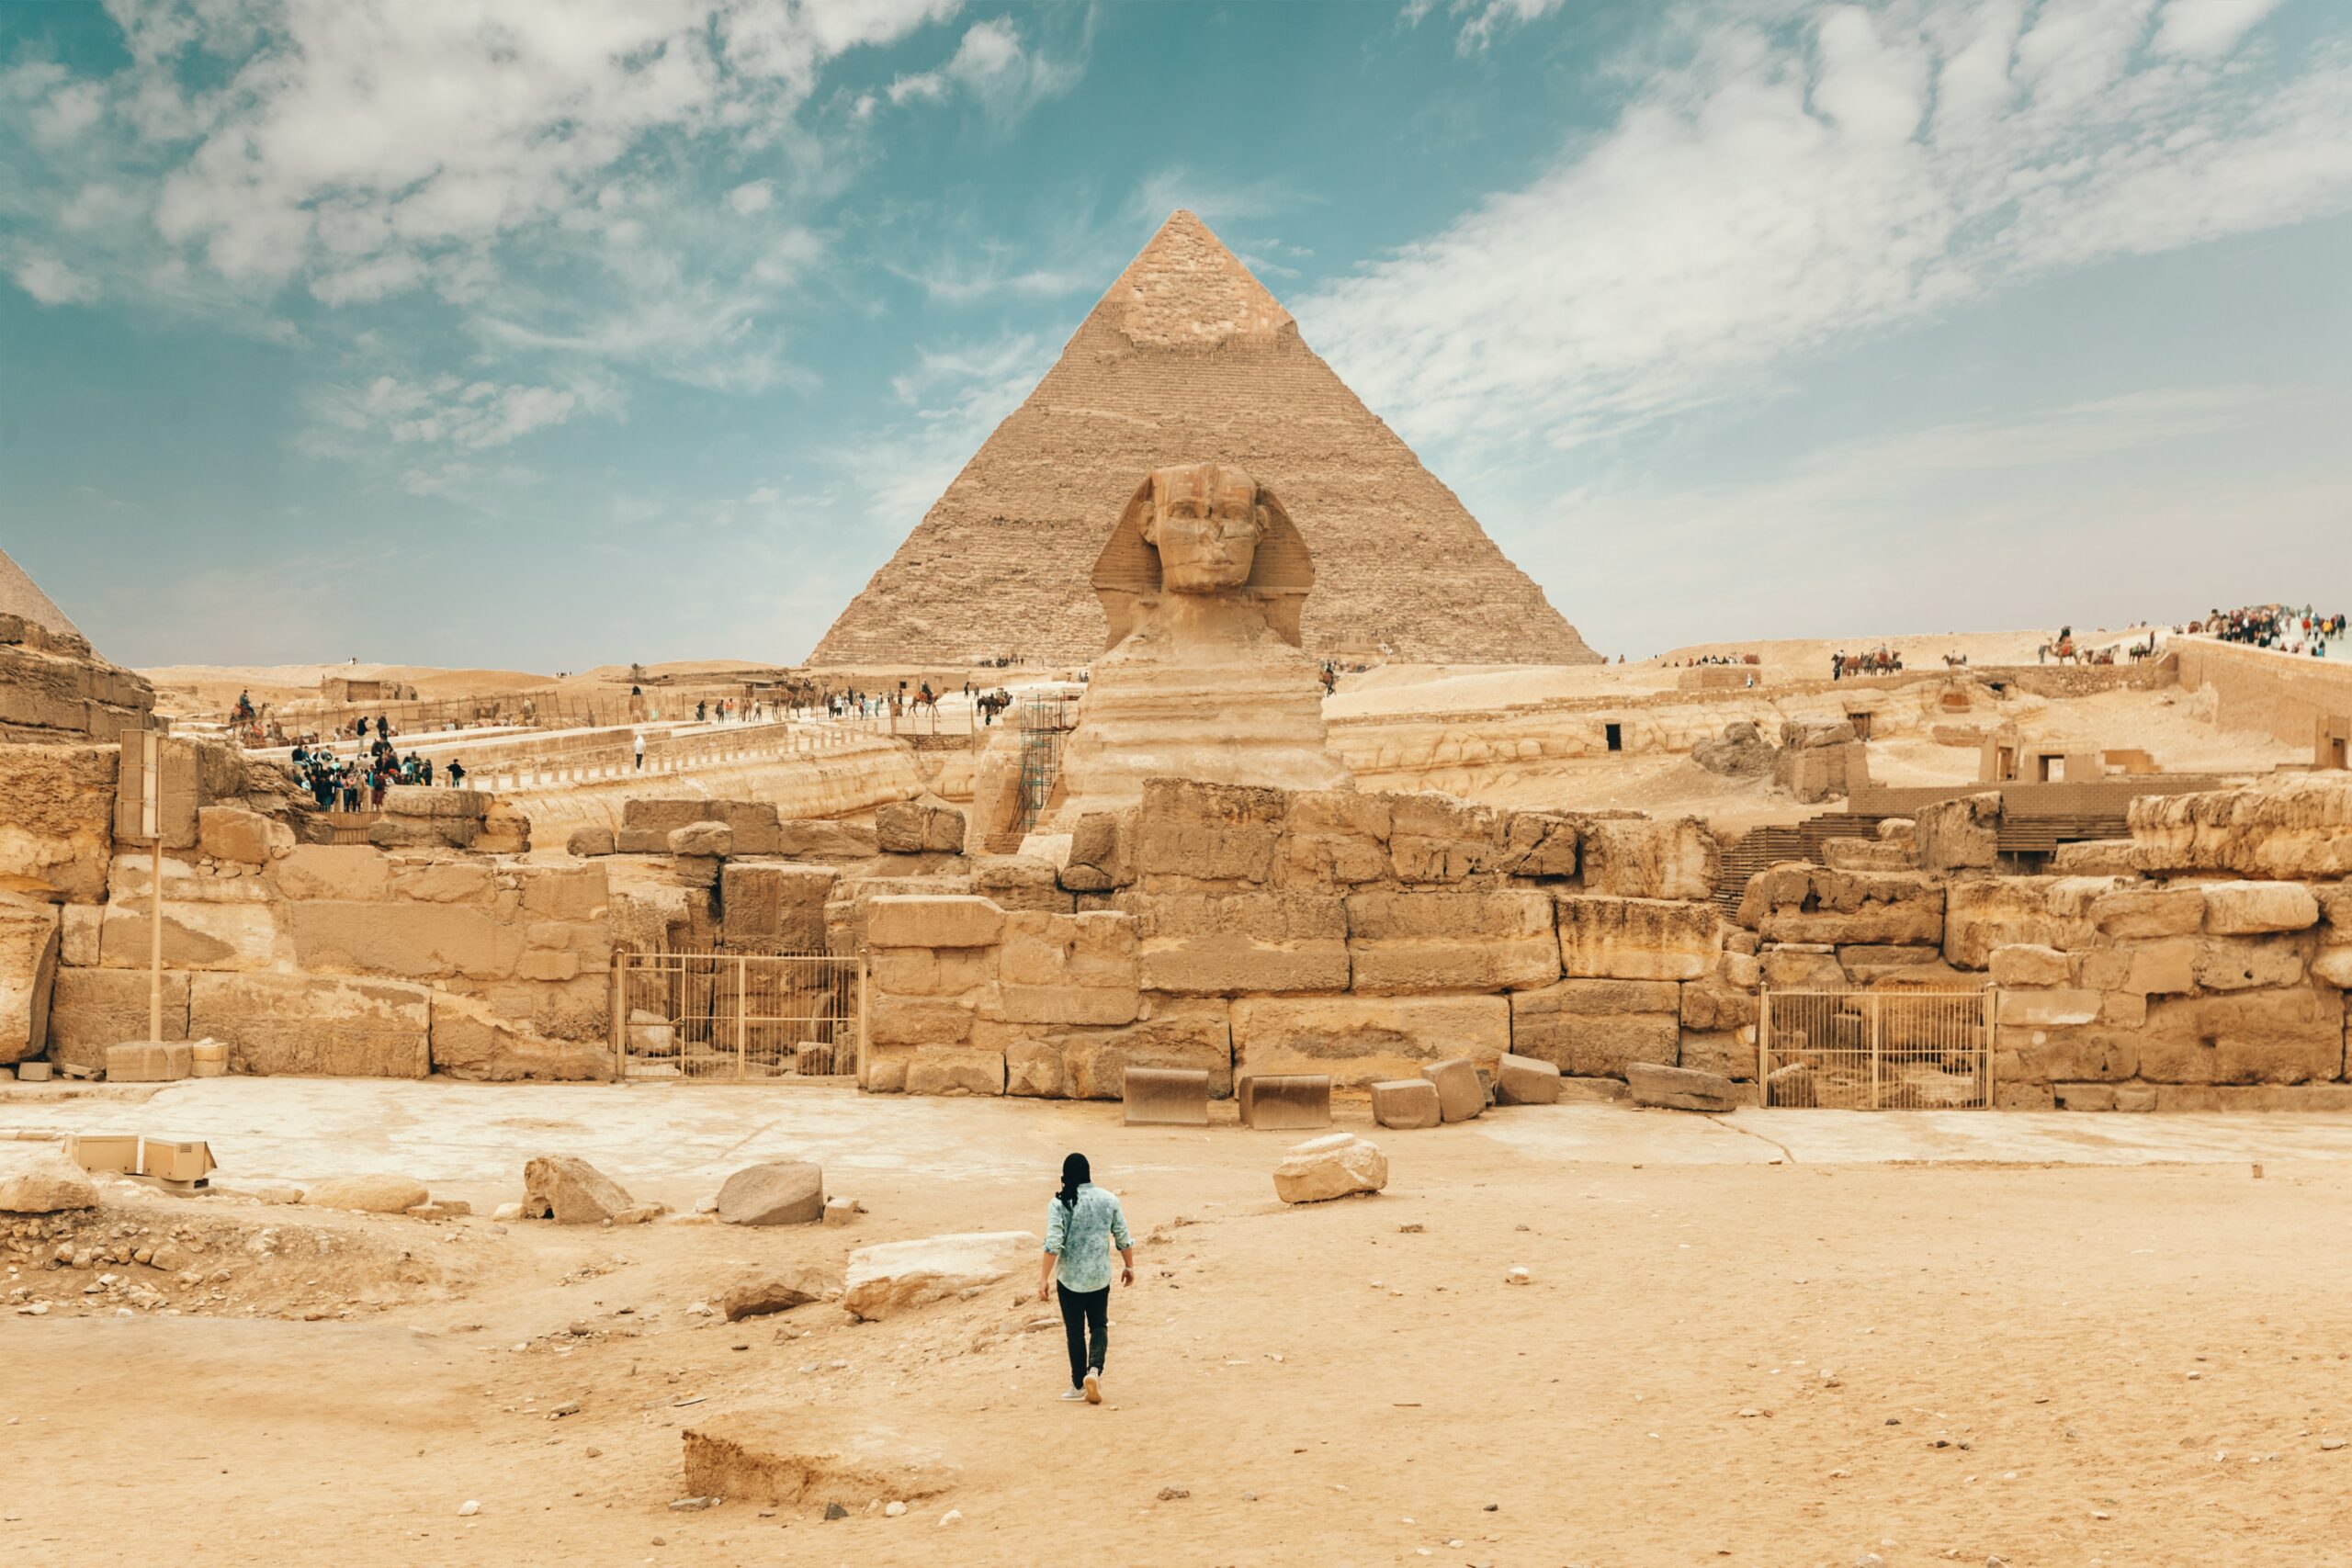 pyramids on trip to egypt